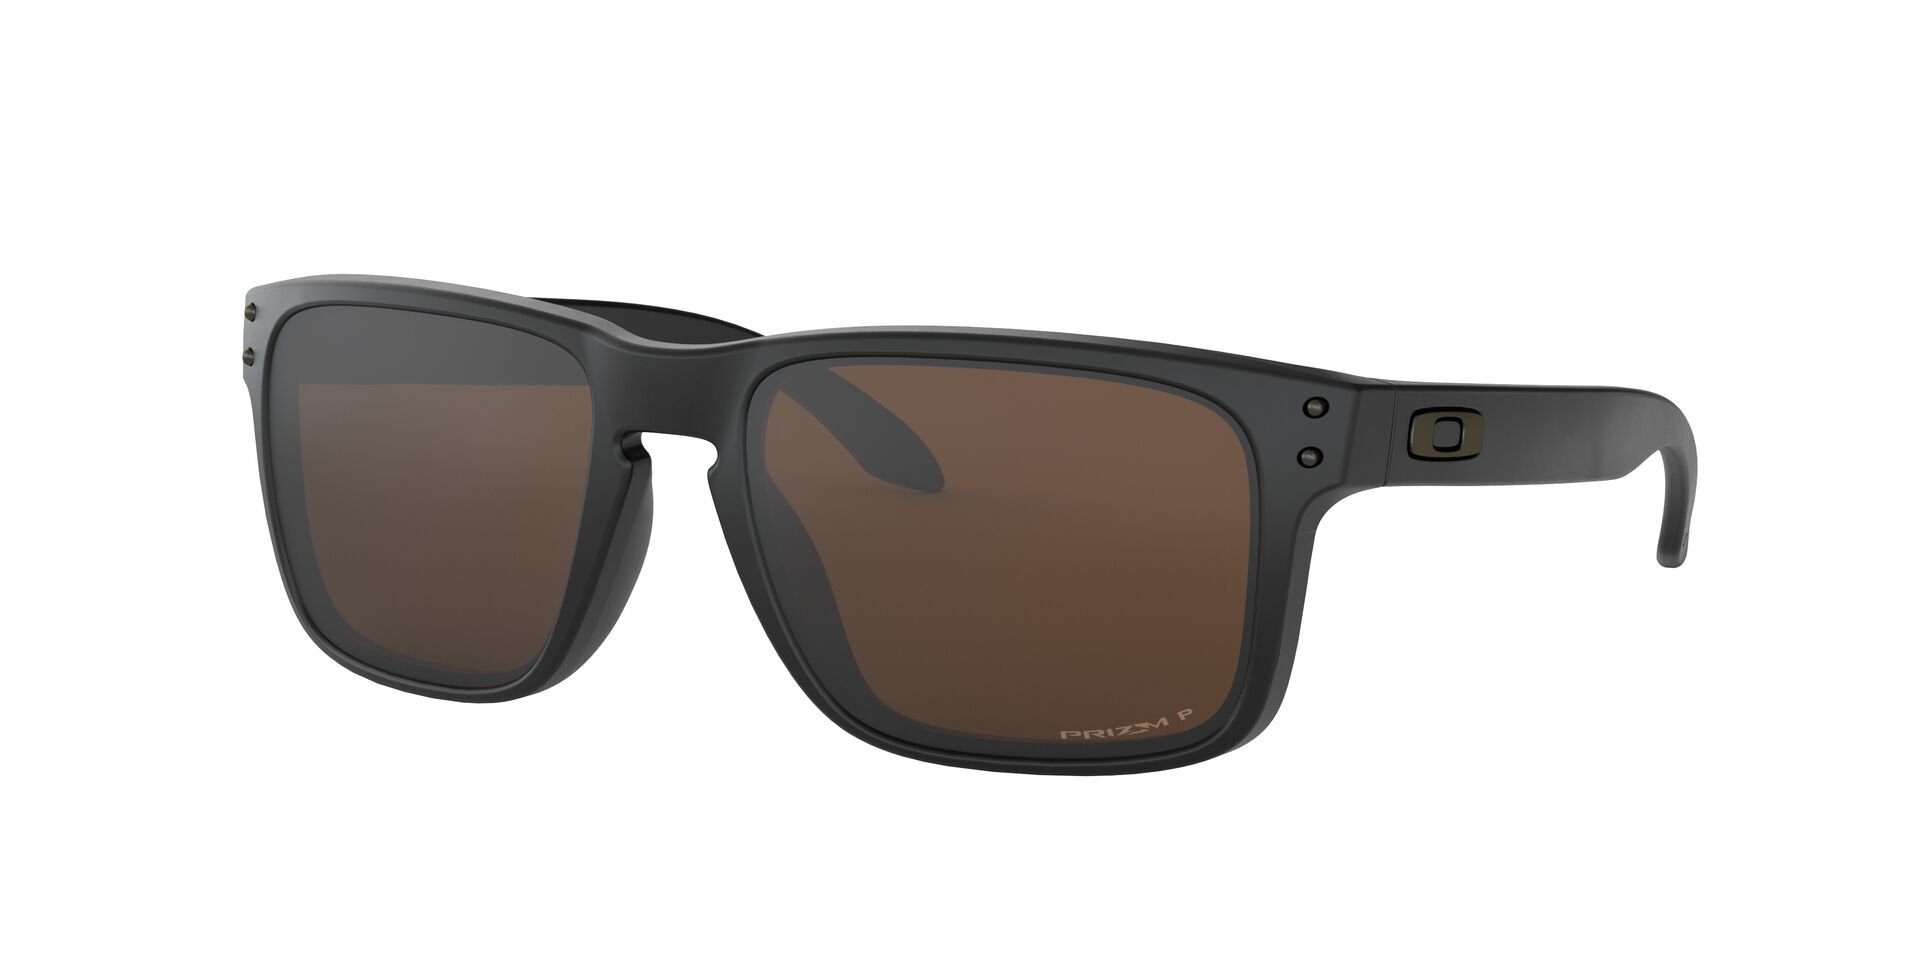 Das Bild zeigt die Sonnenbrille OO9102 9102D7 von der Marke Oakley in  schwarz.